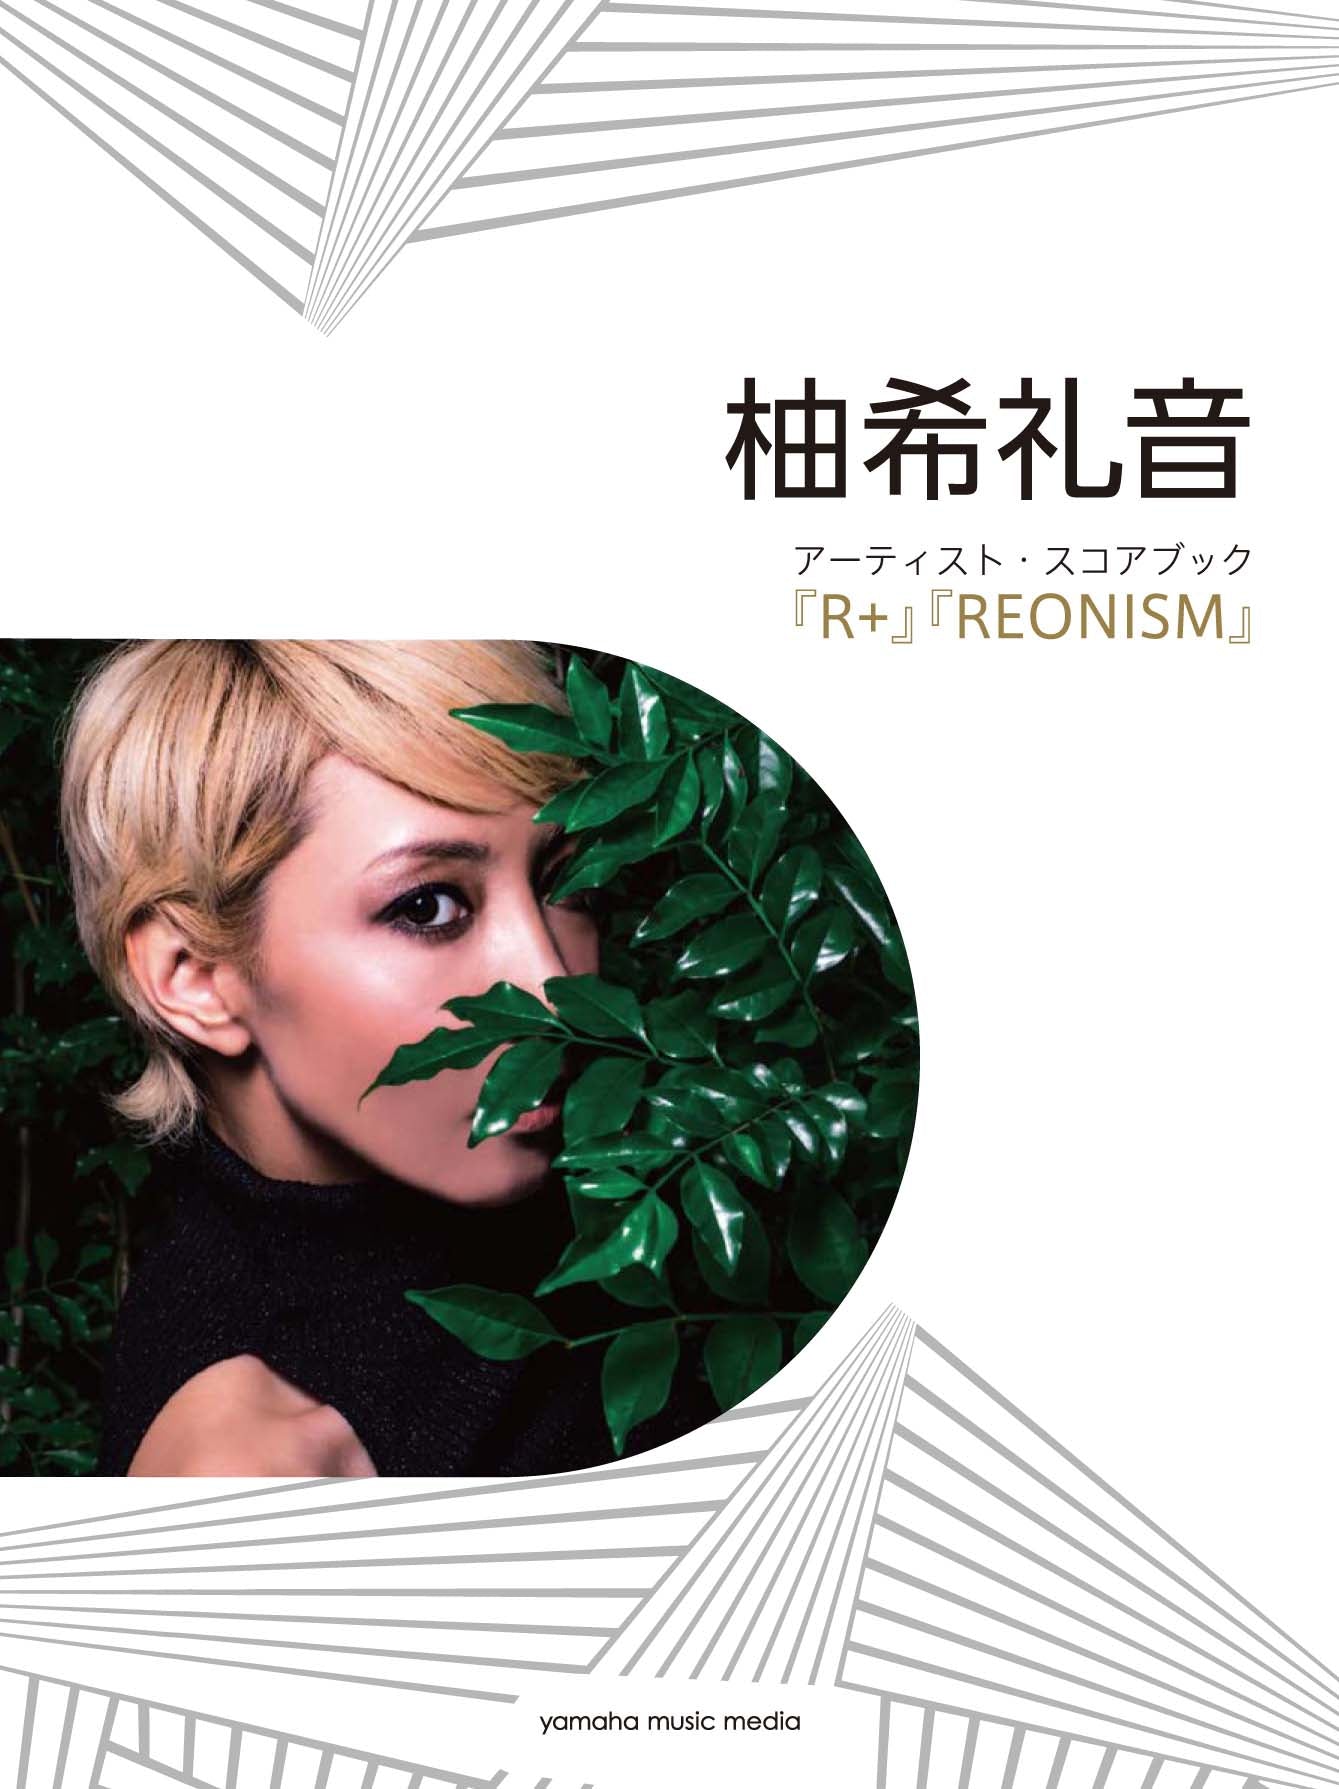 ピアノソロ 柚希礼音 アーティスト・スコアブック -『R+』『REONISM』-